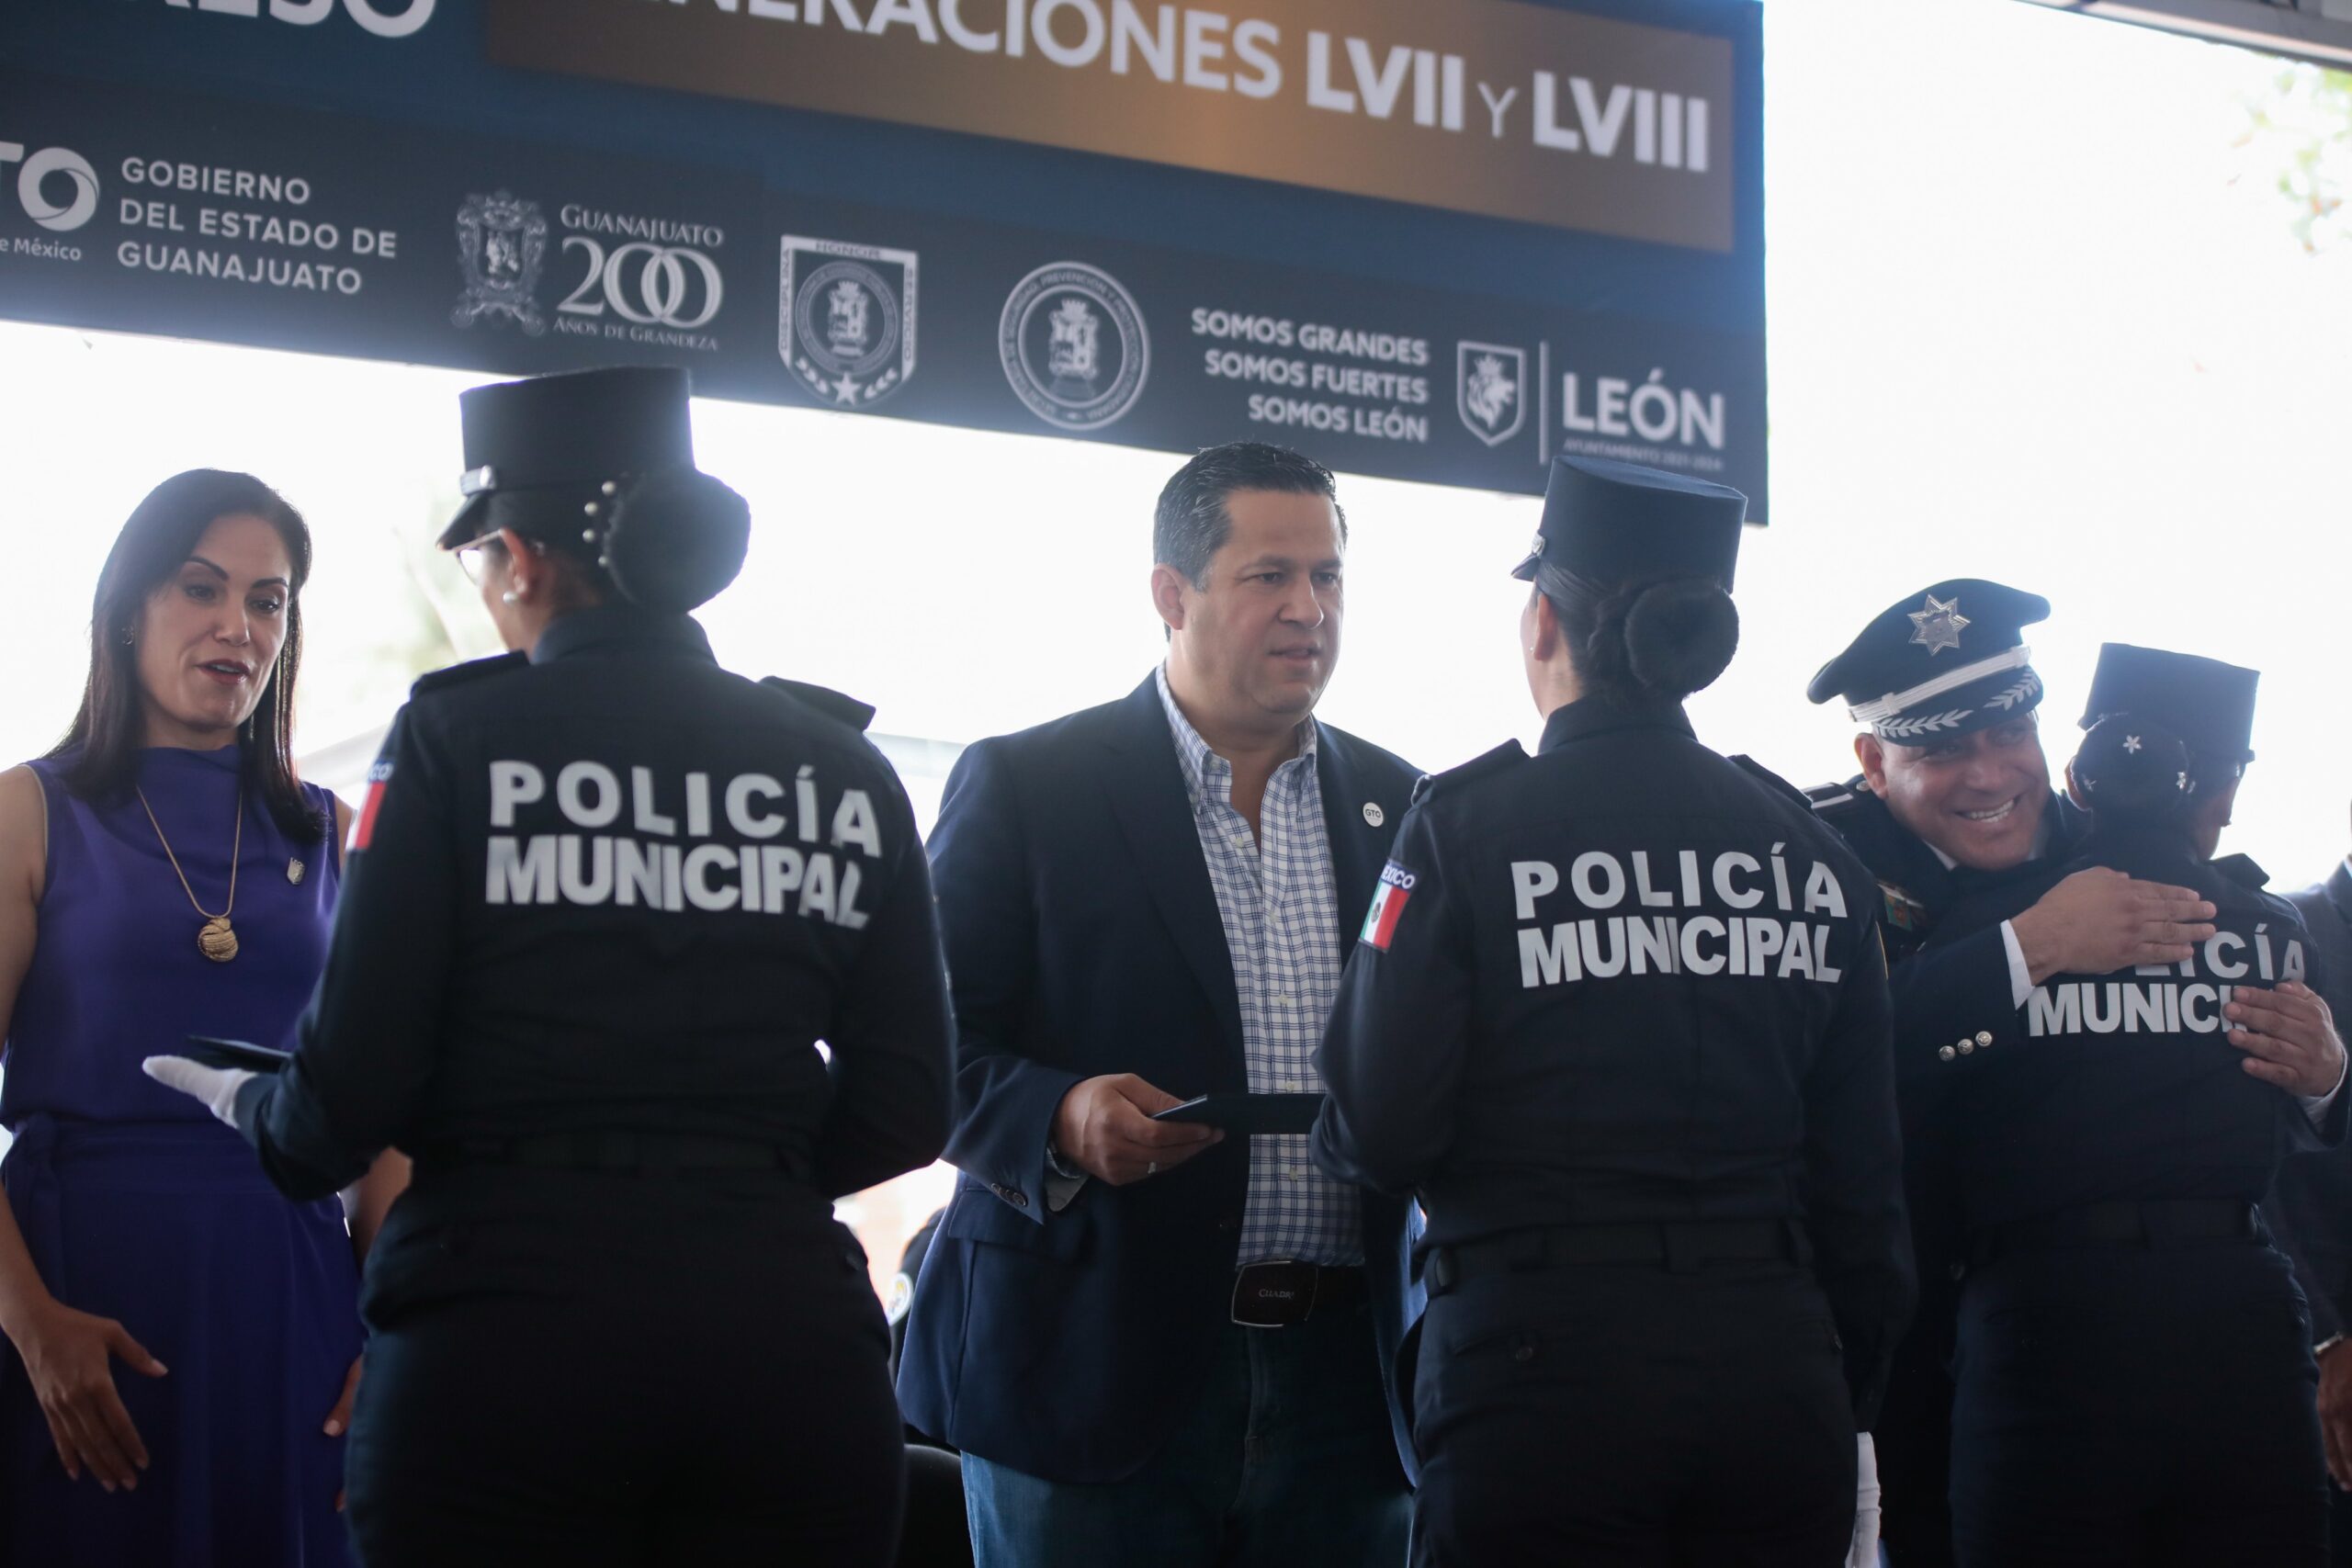 Gobernador destaca esfuerzos por la paz y seguridad en Guanajuato